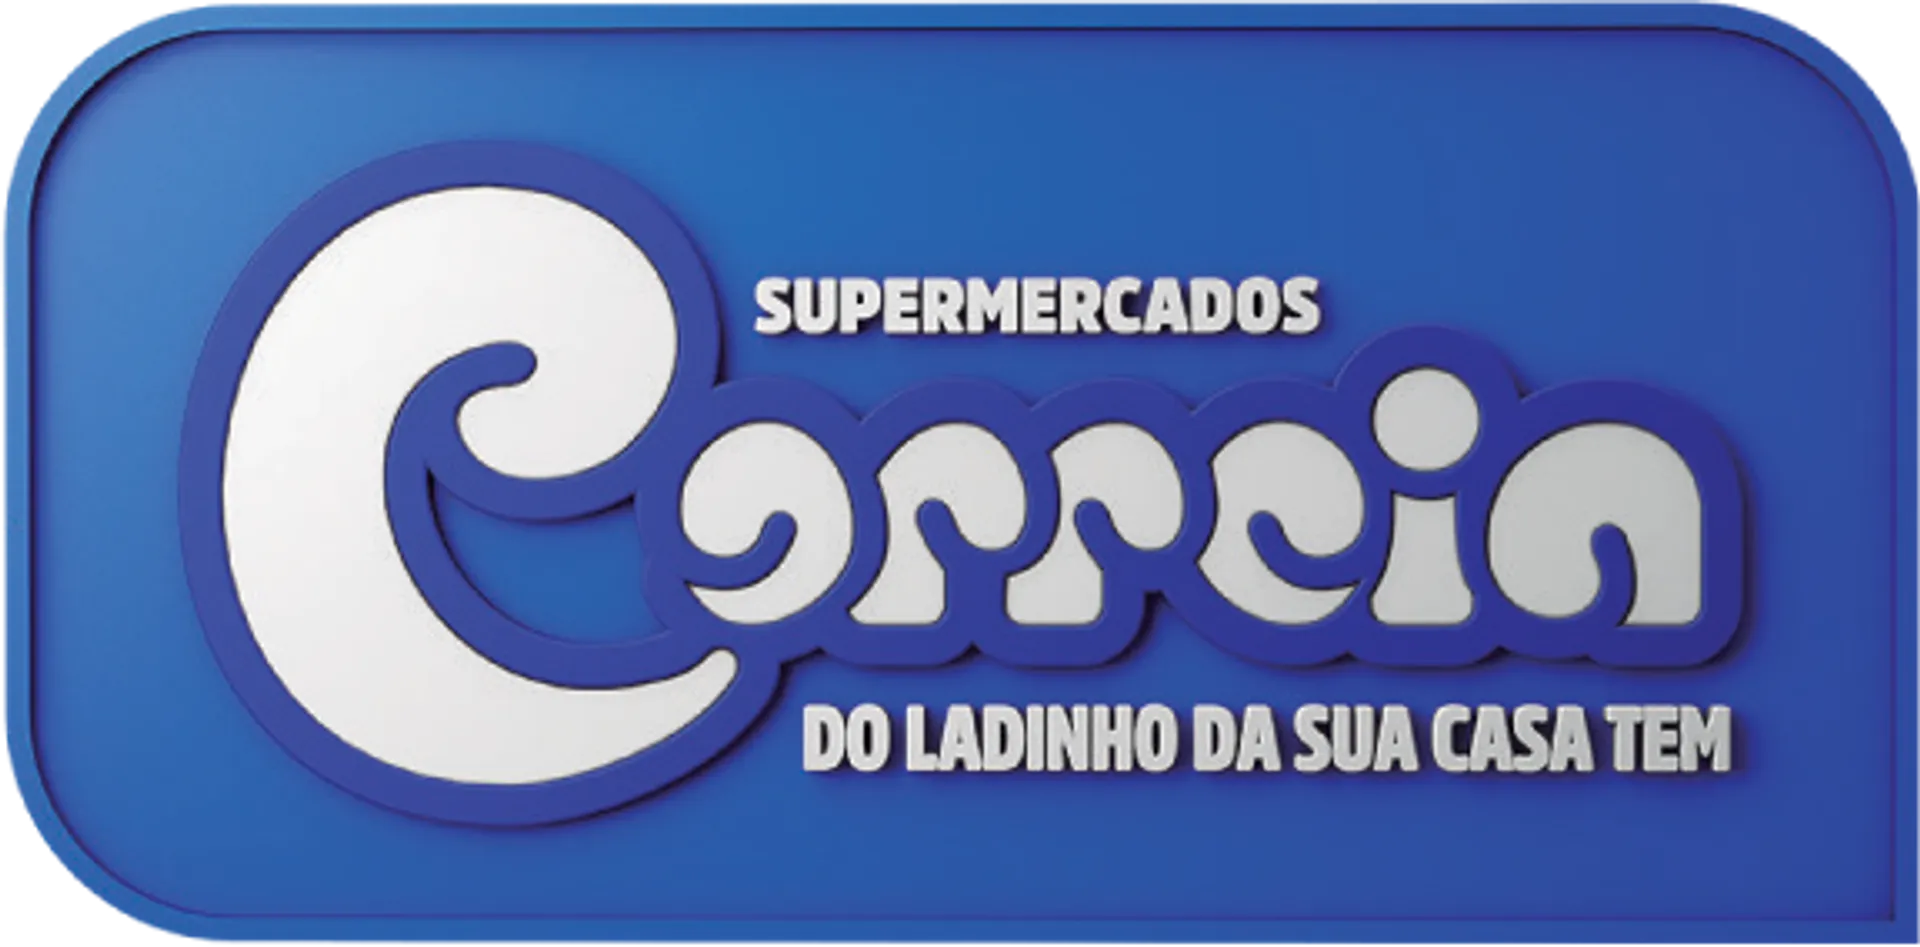 CORREIRA logo